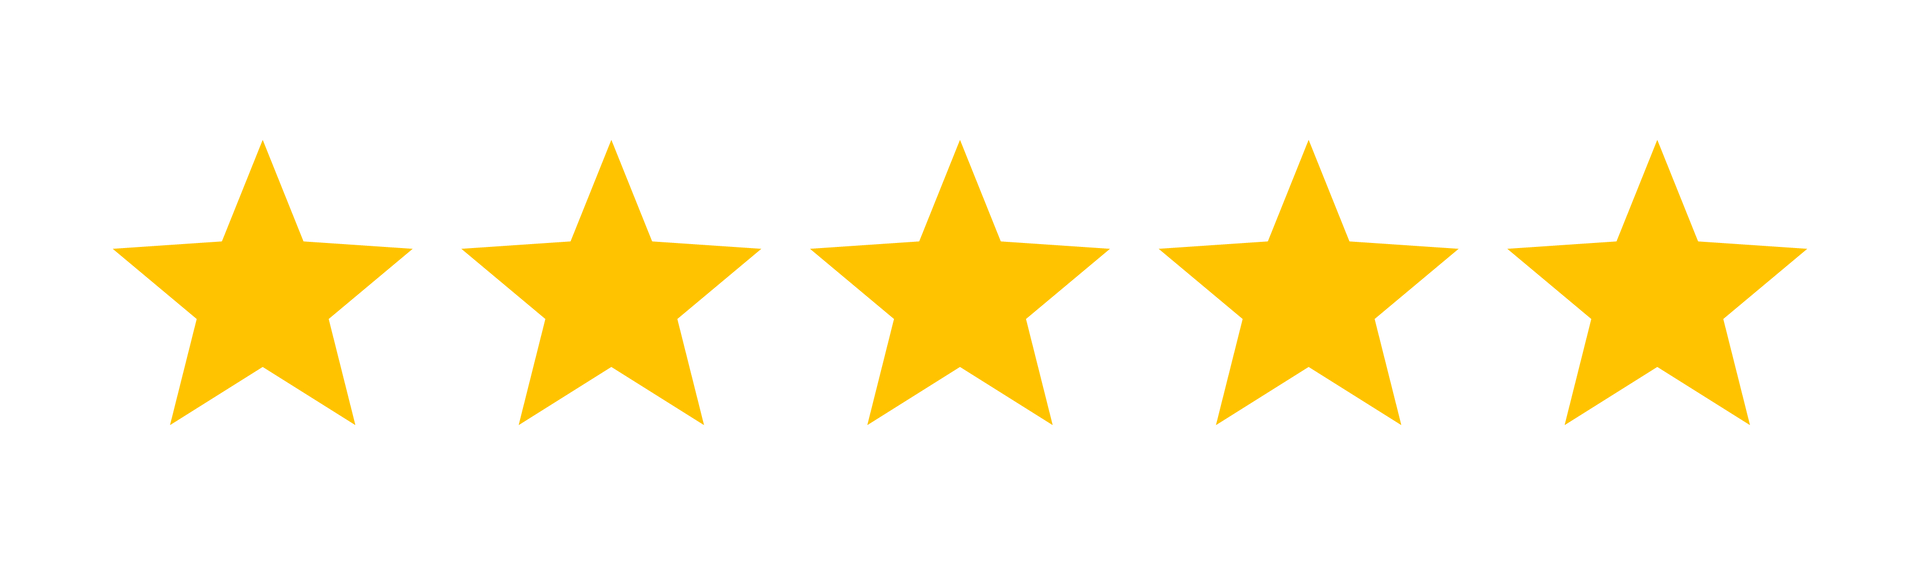 Bewertung 5 Sterne